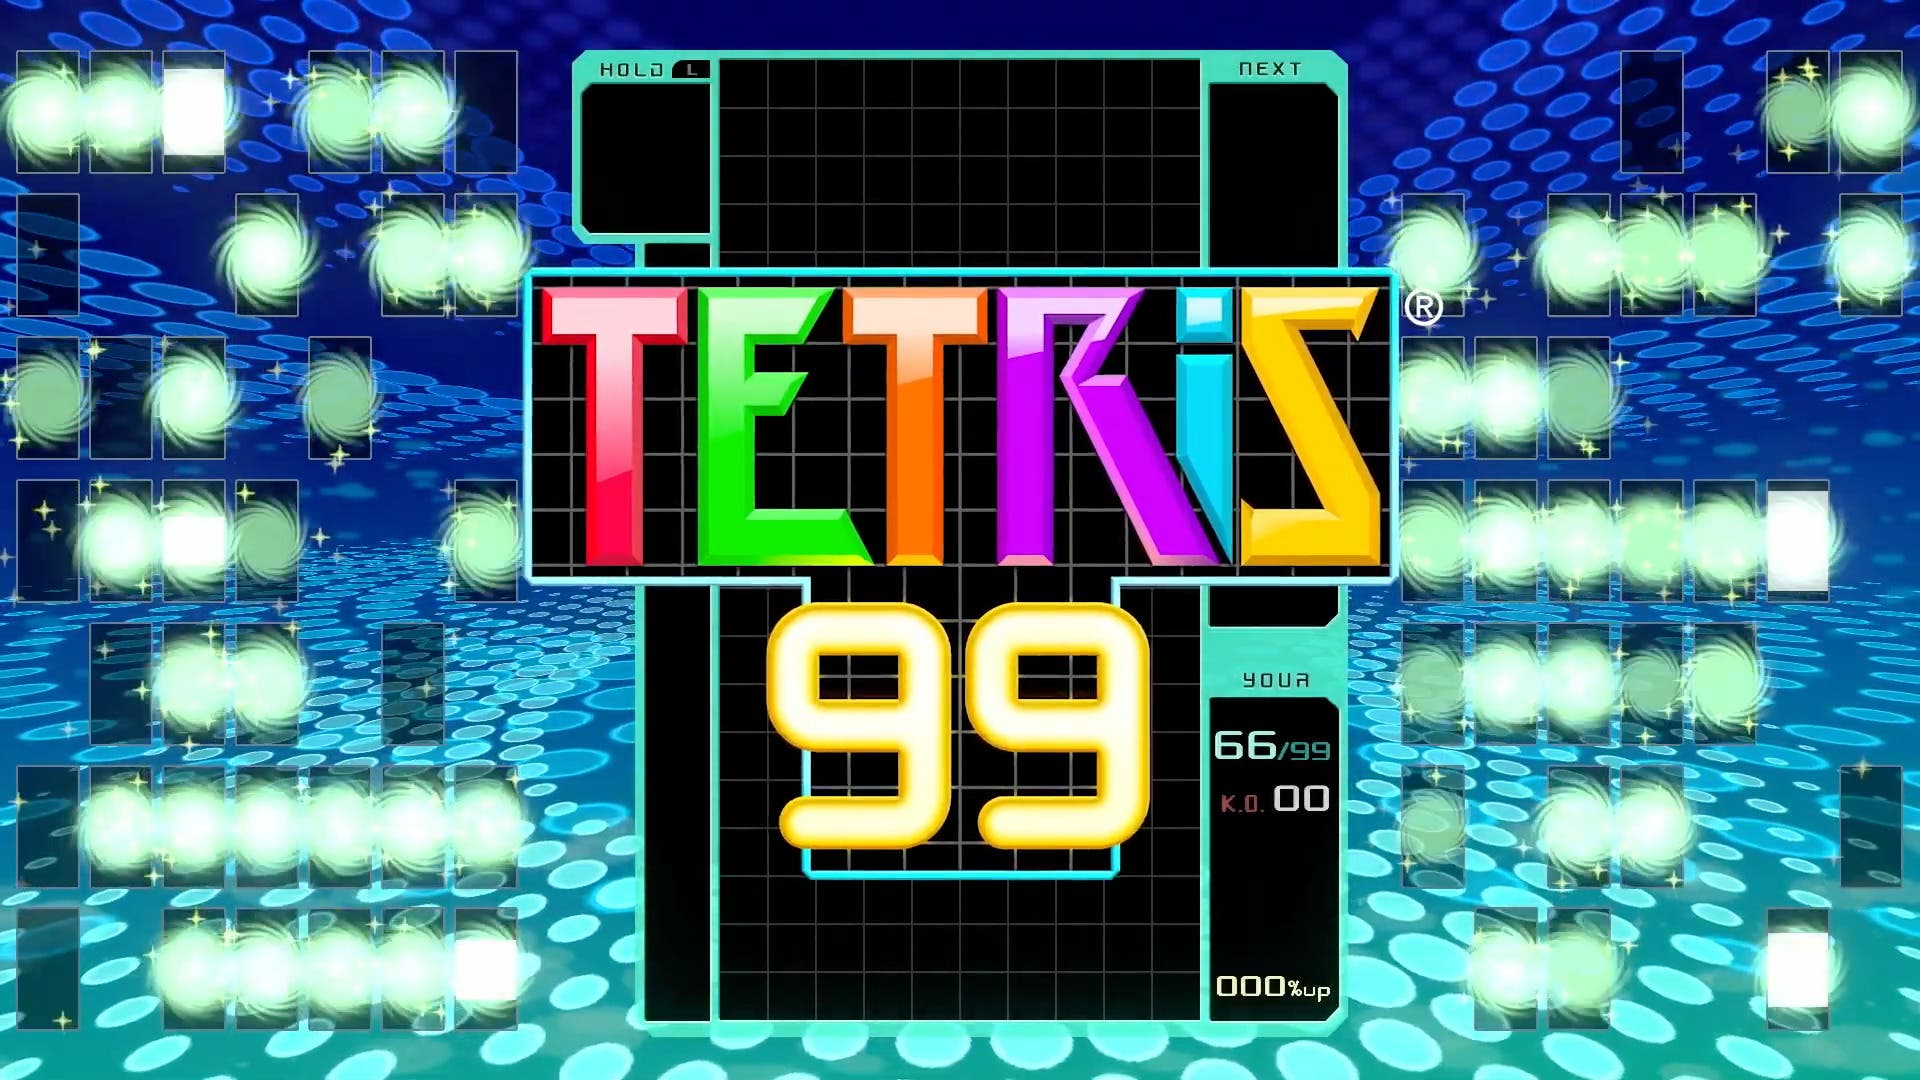 Imagen de Tetris 99 presenta su versión 2.0 junto a nuevo contenido descargable